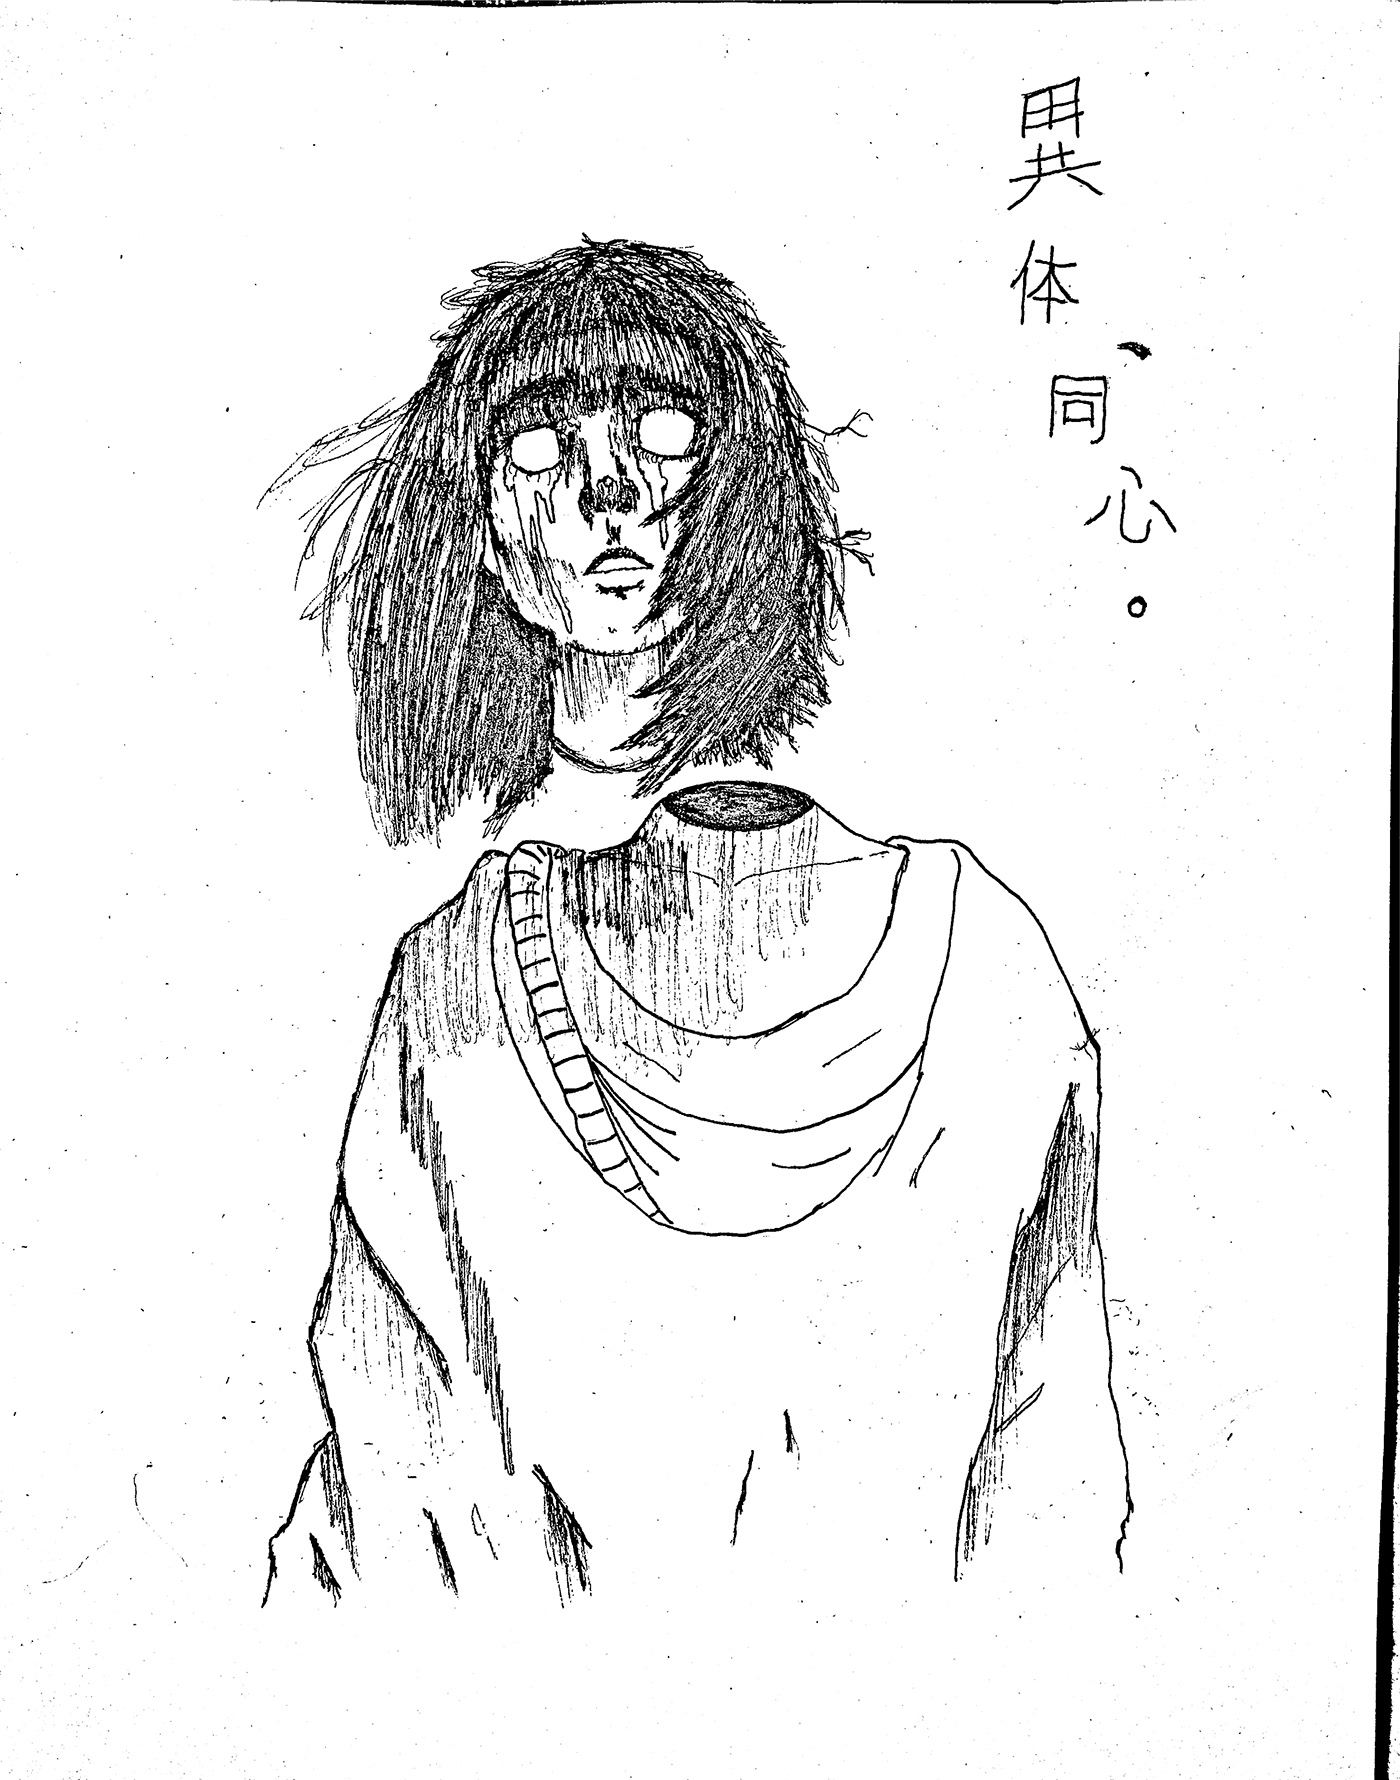 transgender TRANS manga artwork japanese abstract girl